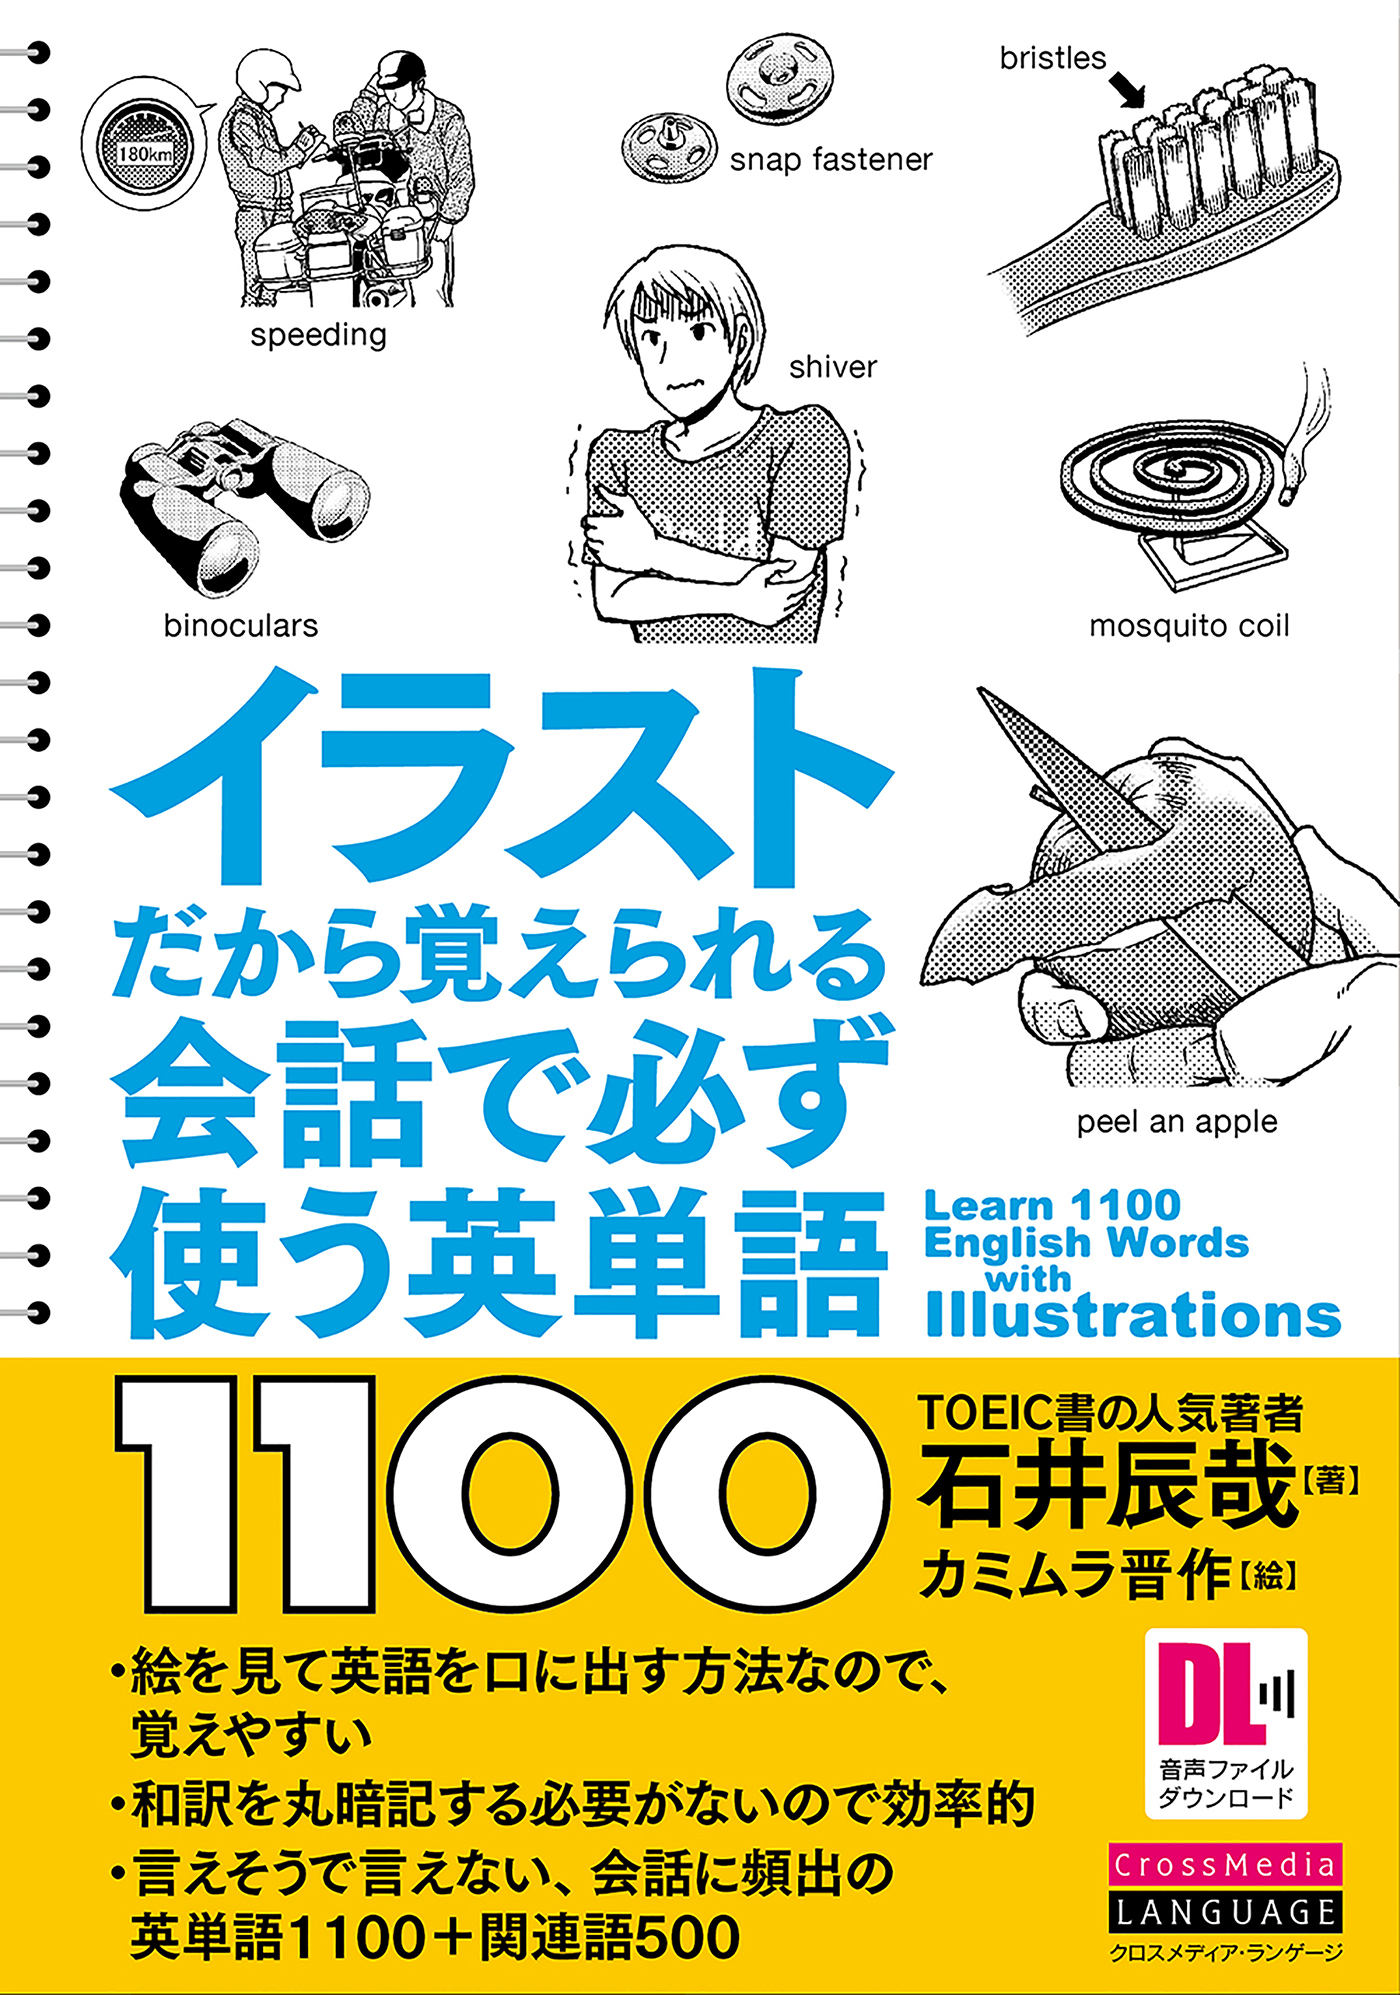 イラストだから覚えられる 会話で必ず使う英単語1100 Japan Book Bank